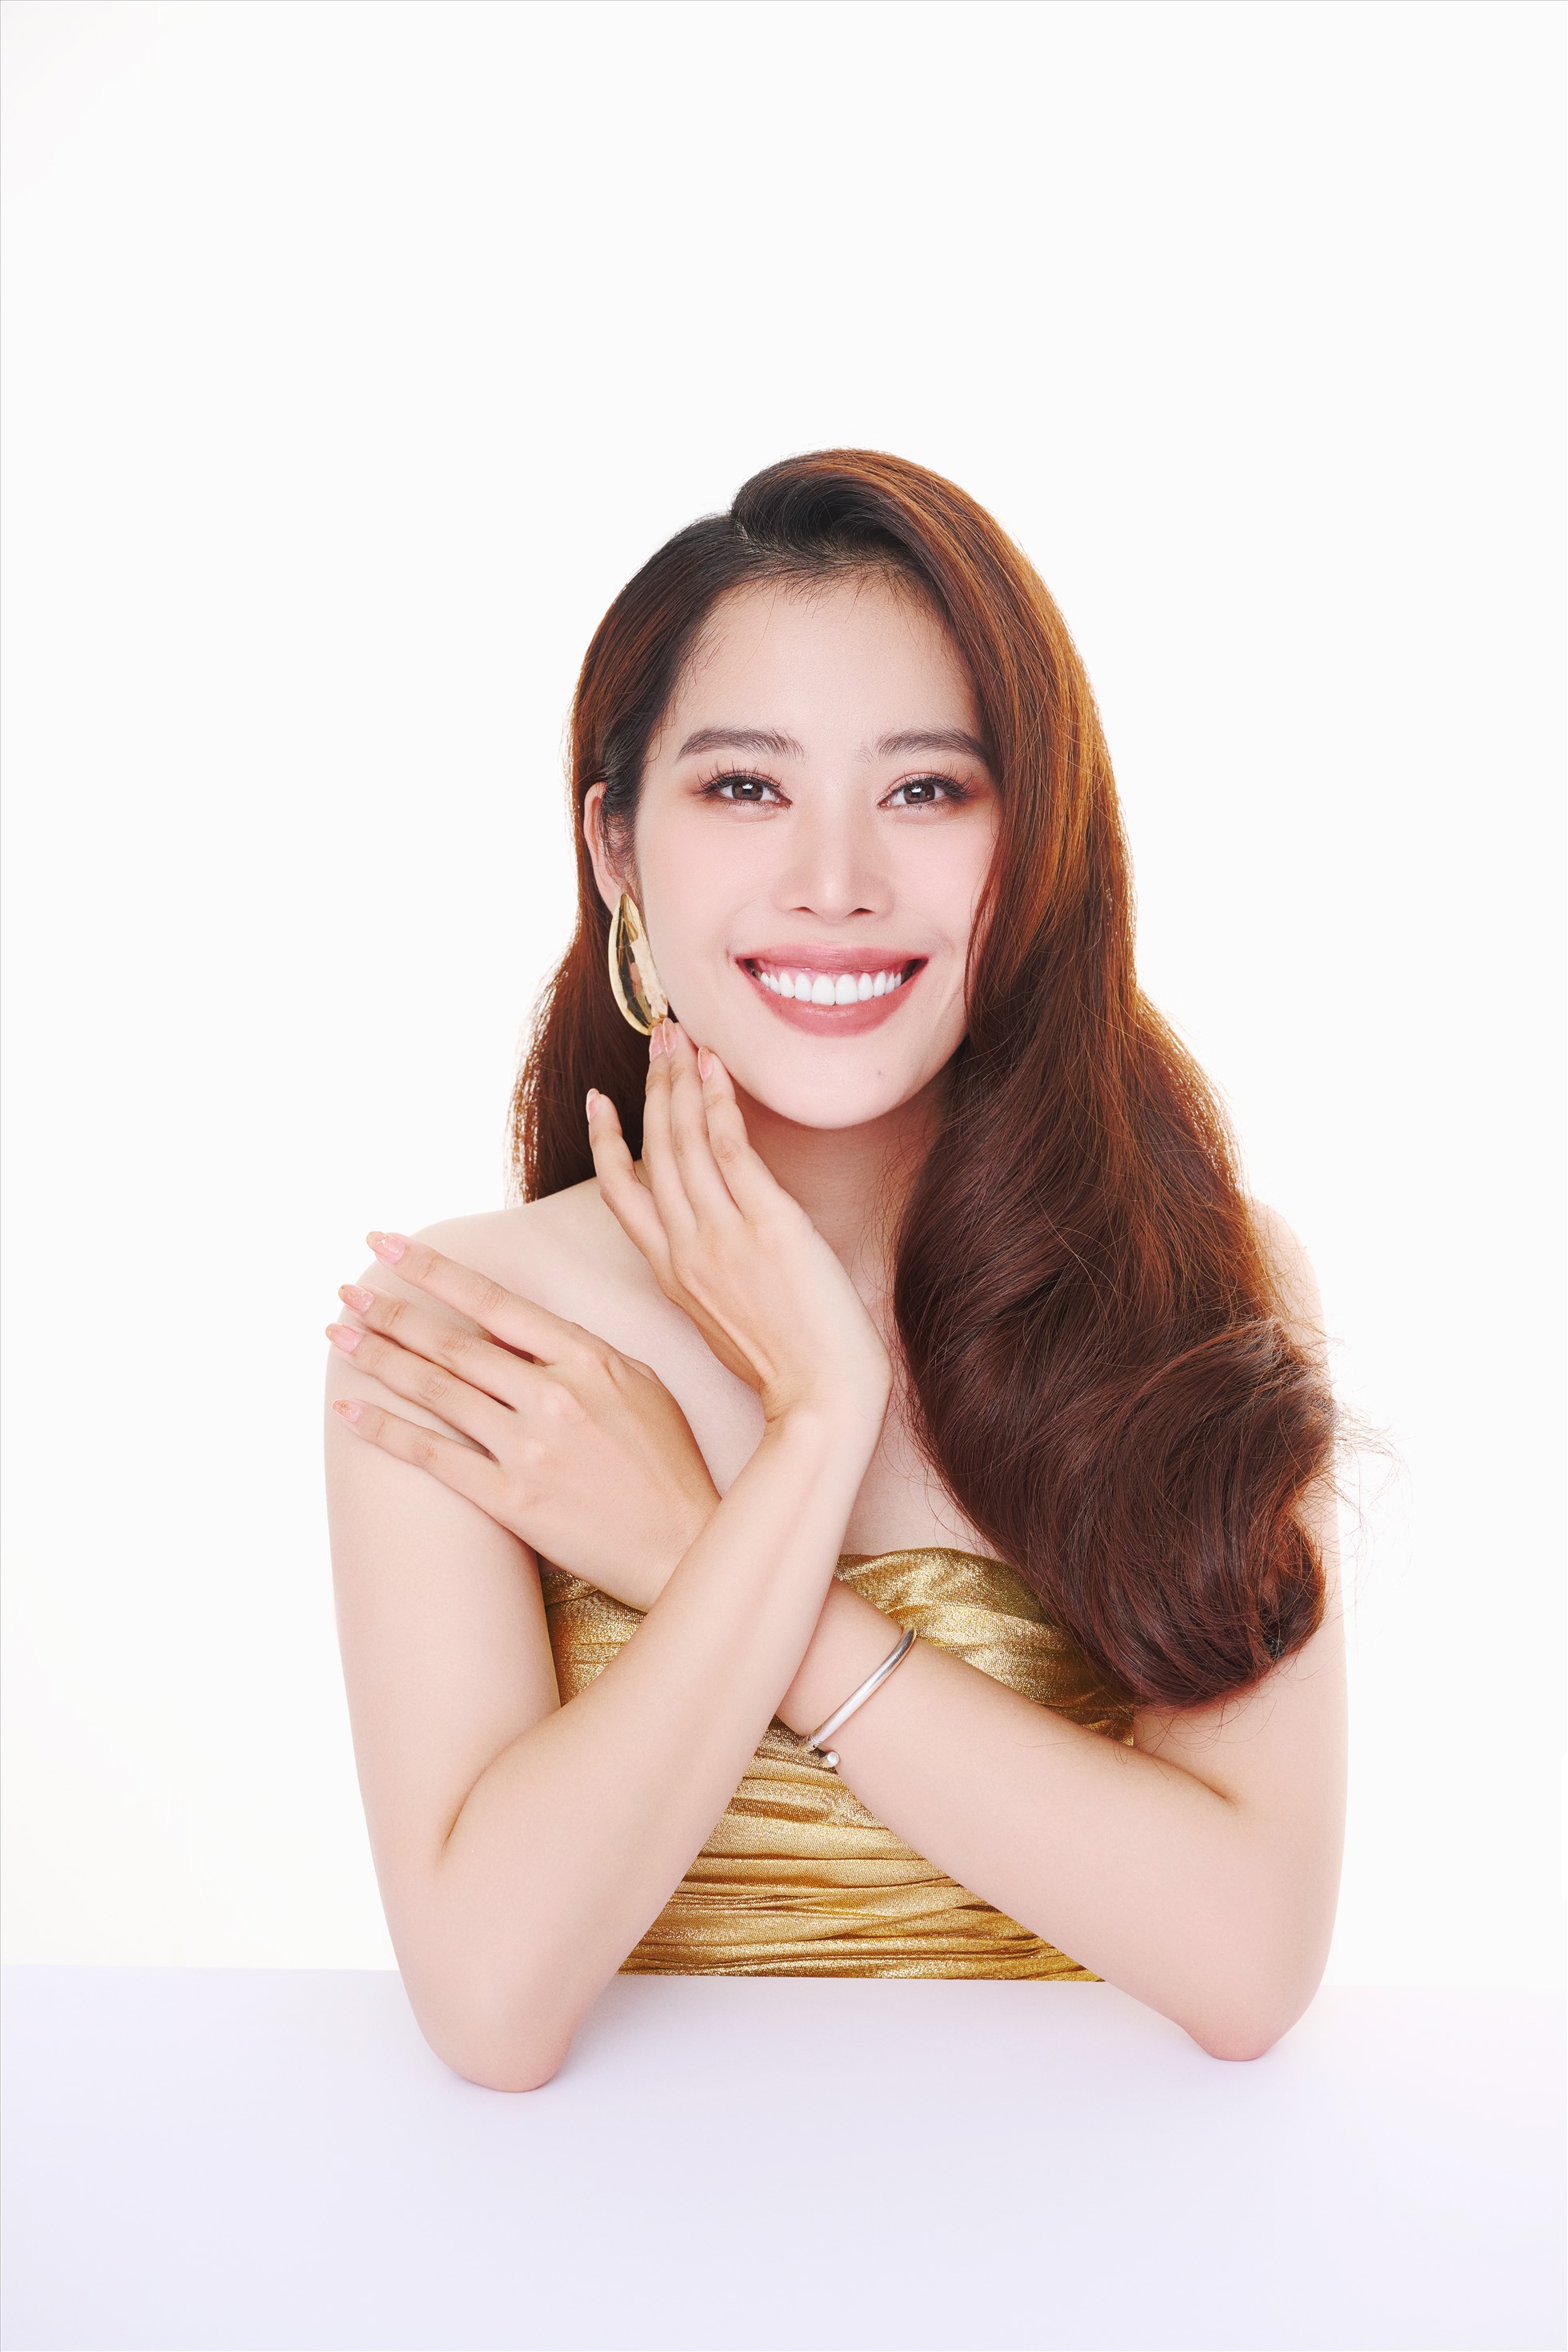 Năm ngoái, sao phim “Lô tô” cũng vào Top 10 Hoa hậu Thế giới Việt Nam 2022. Ở tuổi 27, Nam Em với nhan sắc rạng rỡ cho thấy bản thân cô vẫn hoàn toàn có thể tranh tài thêm các cuộc thi nhan sắc khác.